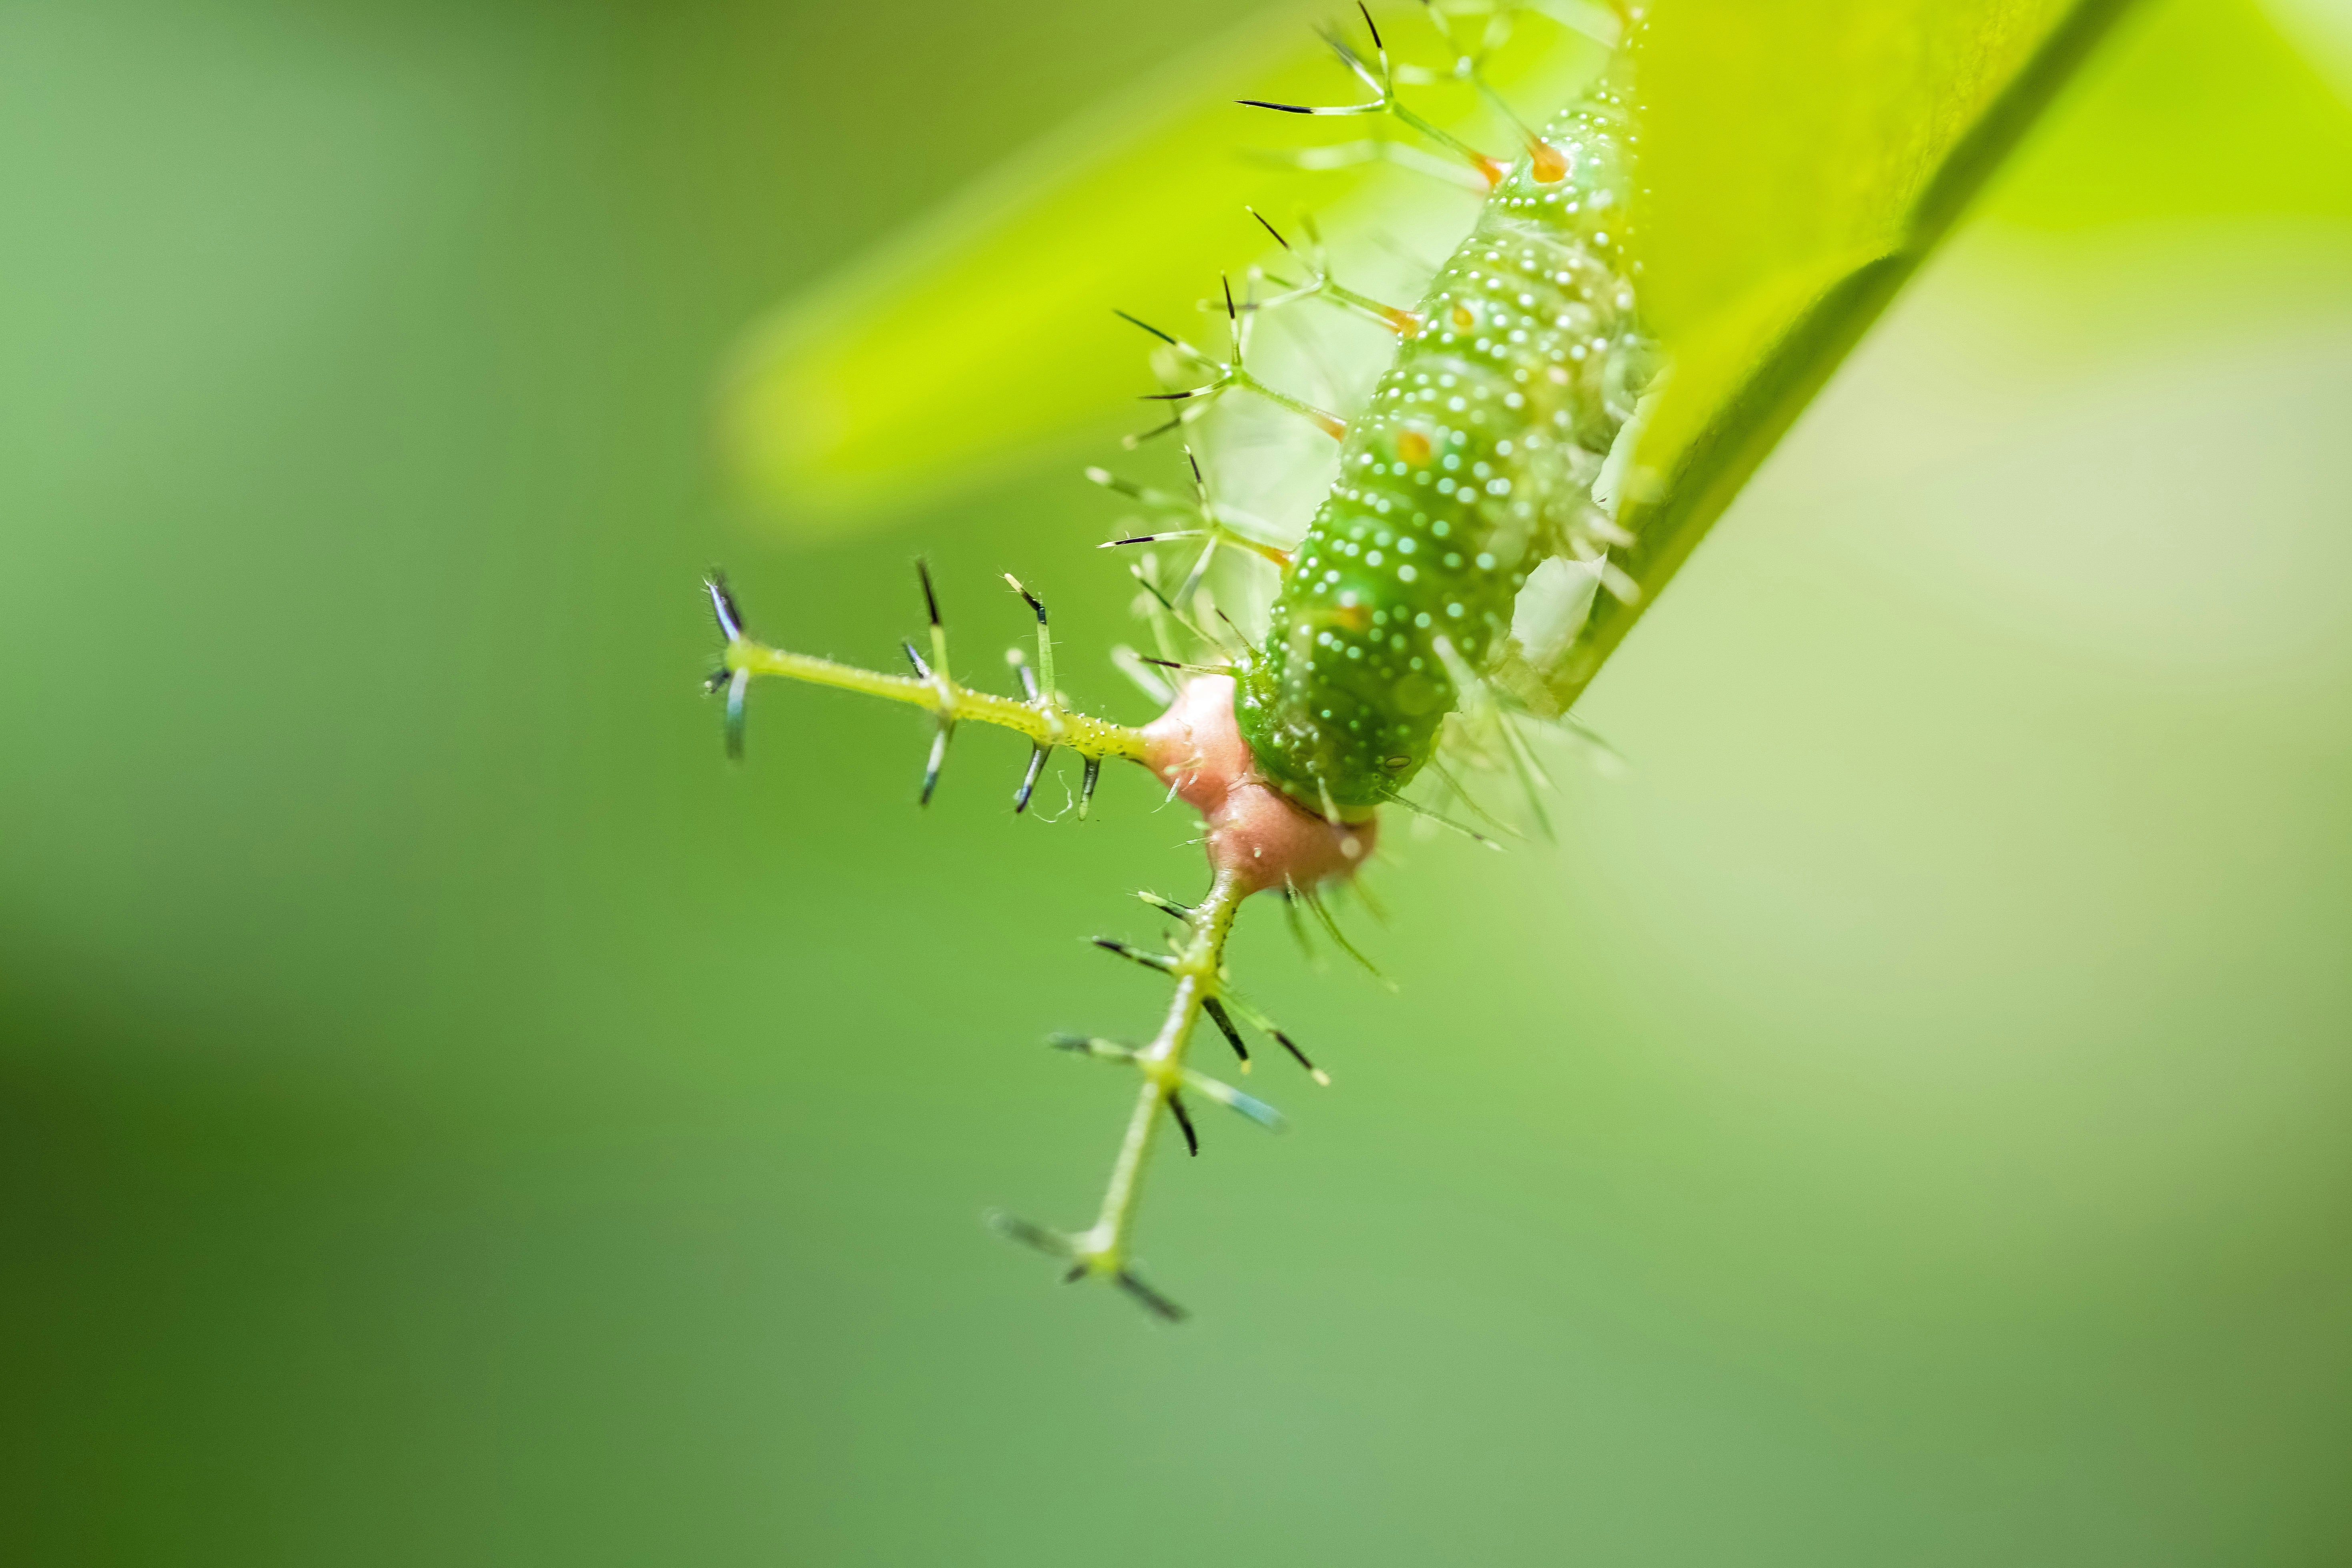 green caterpillar on green stem